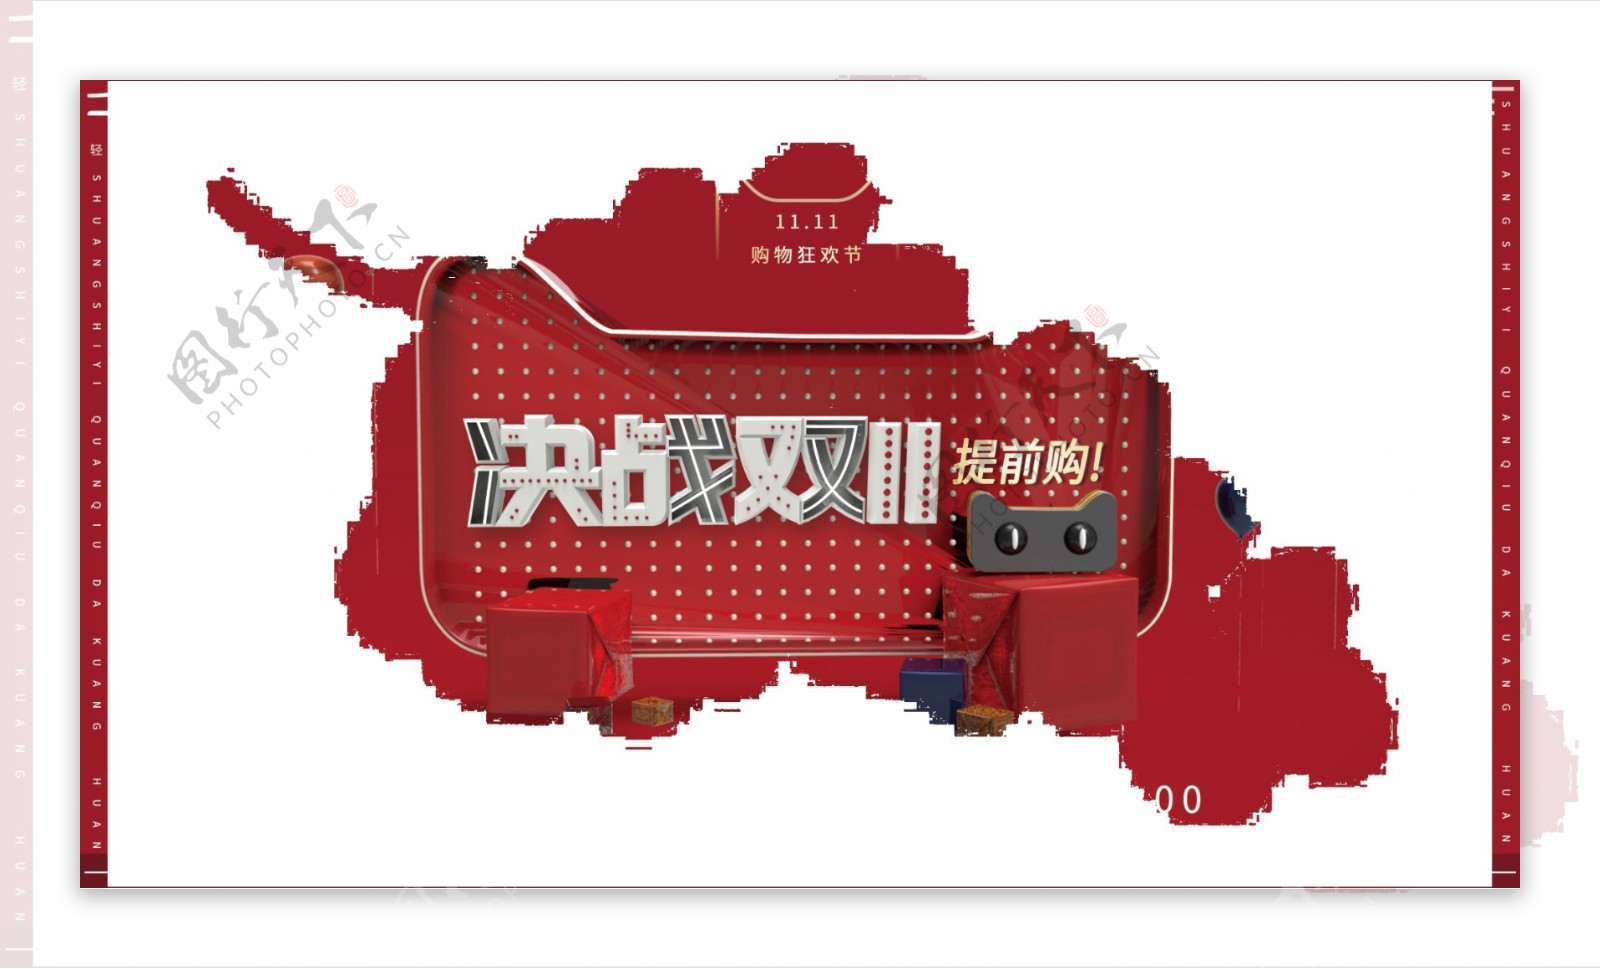 C4D红色系大气双十一节日商业促销海报